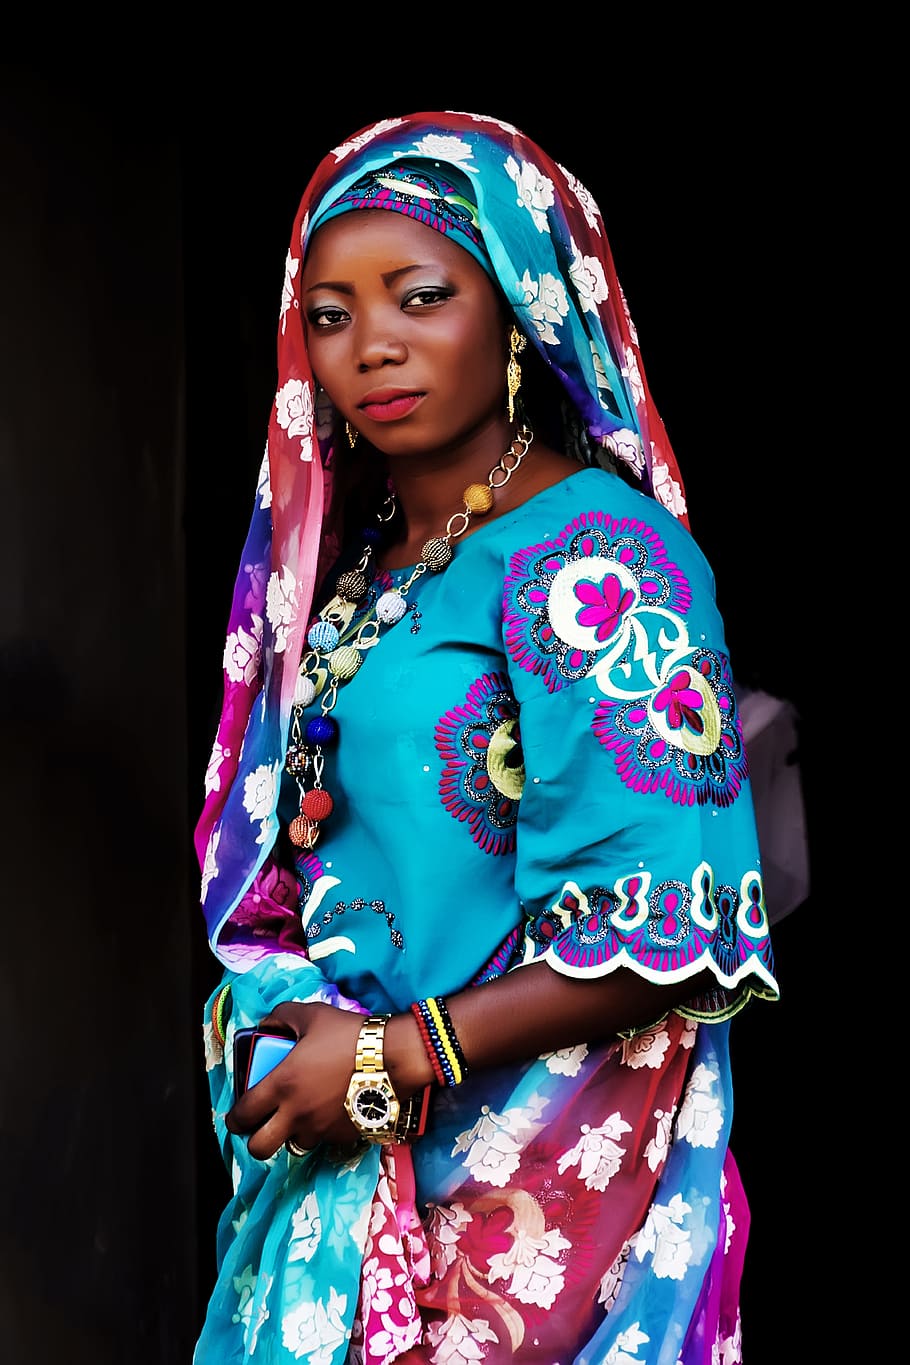 azul, púrpura, floral, vestido, mujer africana, mujer, mujer de nigeria, negro, mujeres negras, hermosa mujer negra